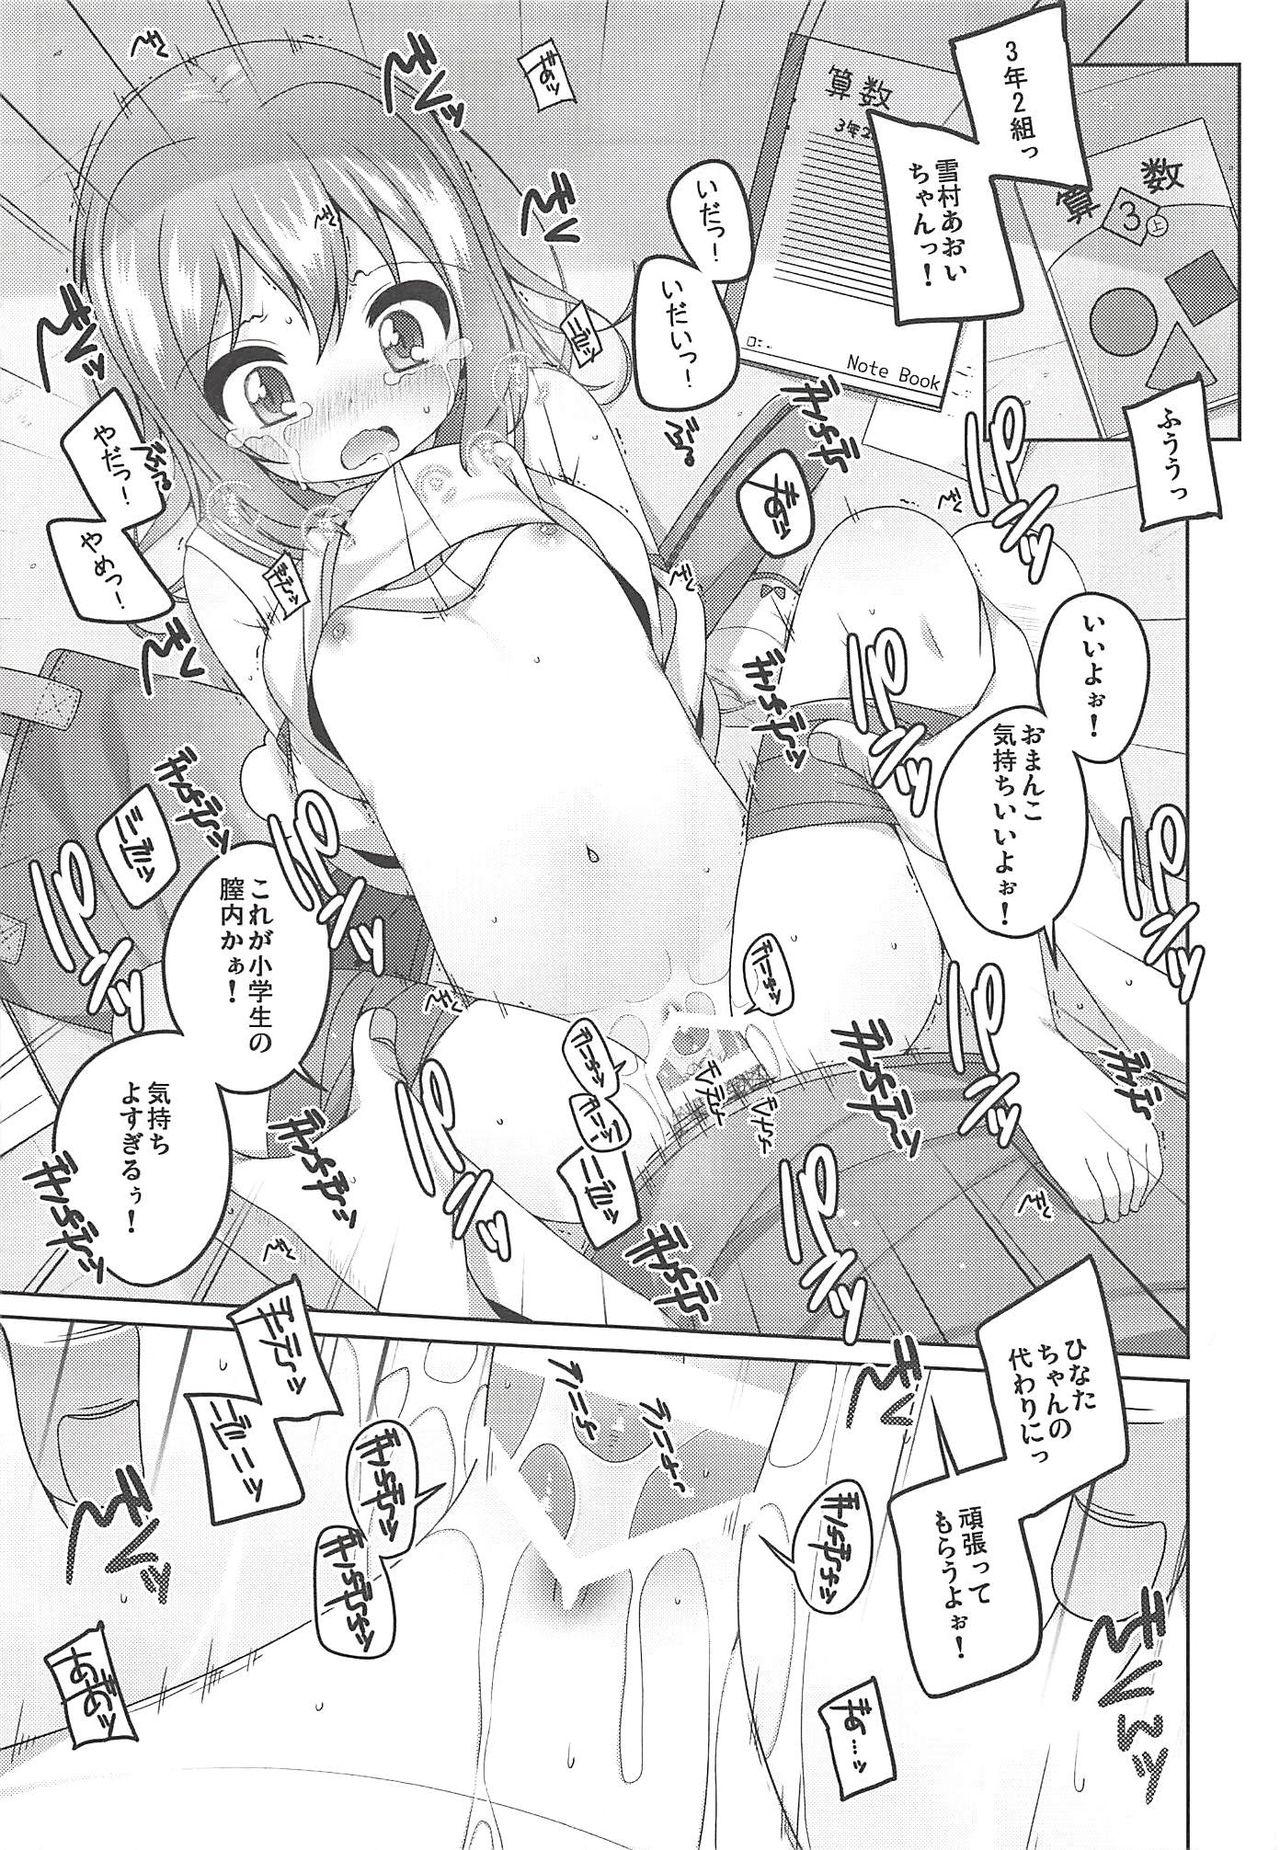 Follada M no Susume - Yama no susume Natural - Page 6